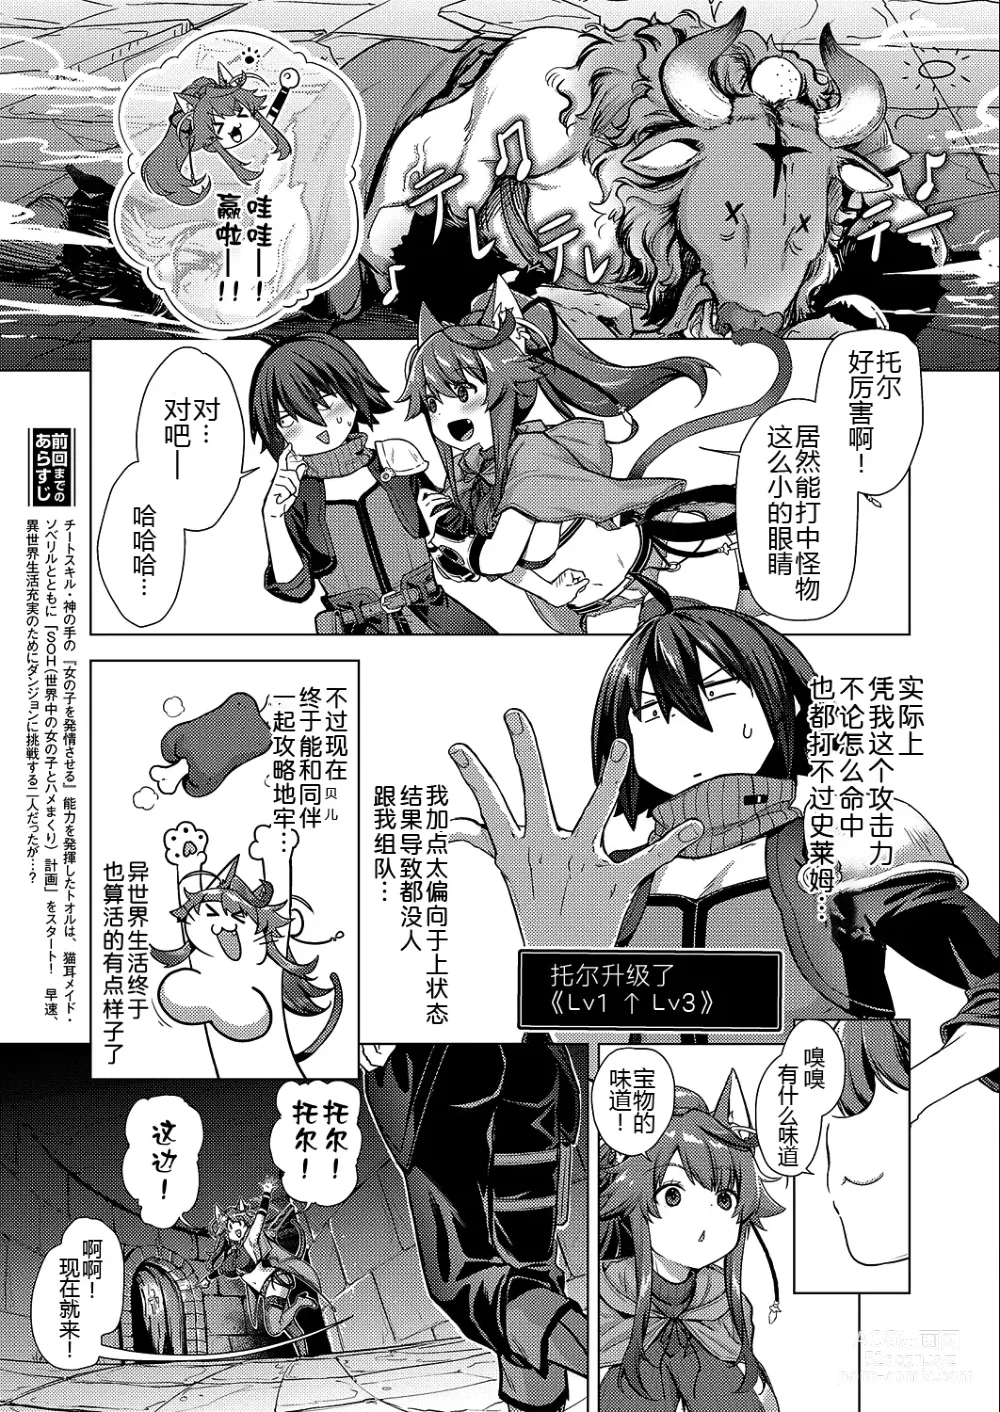 Page 6 of manga Kami no Te 2